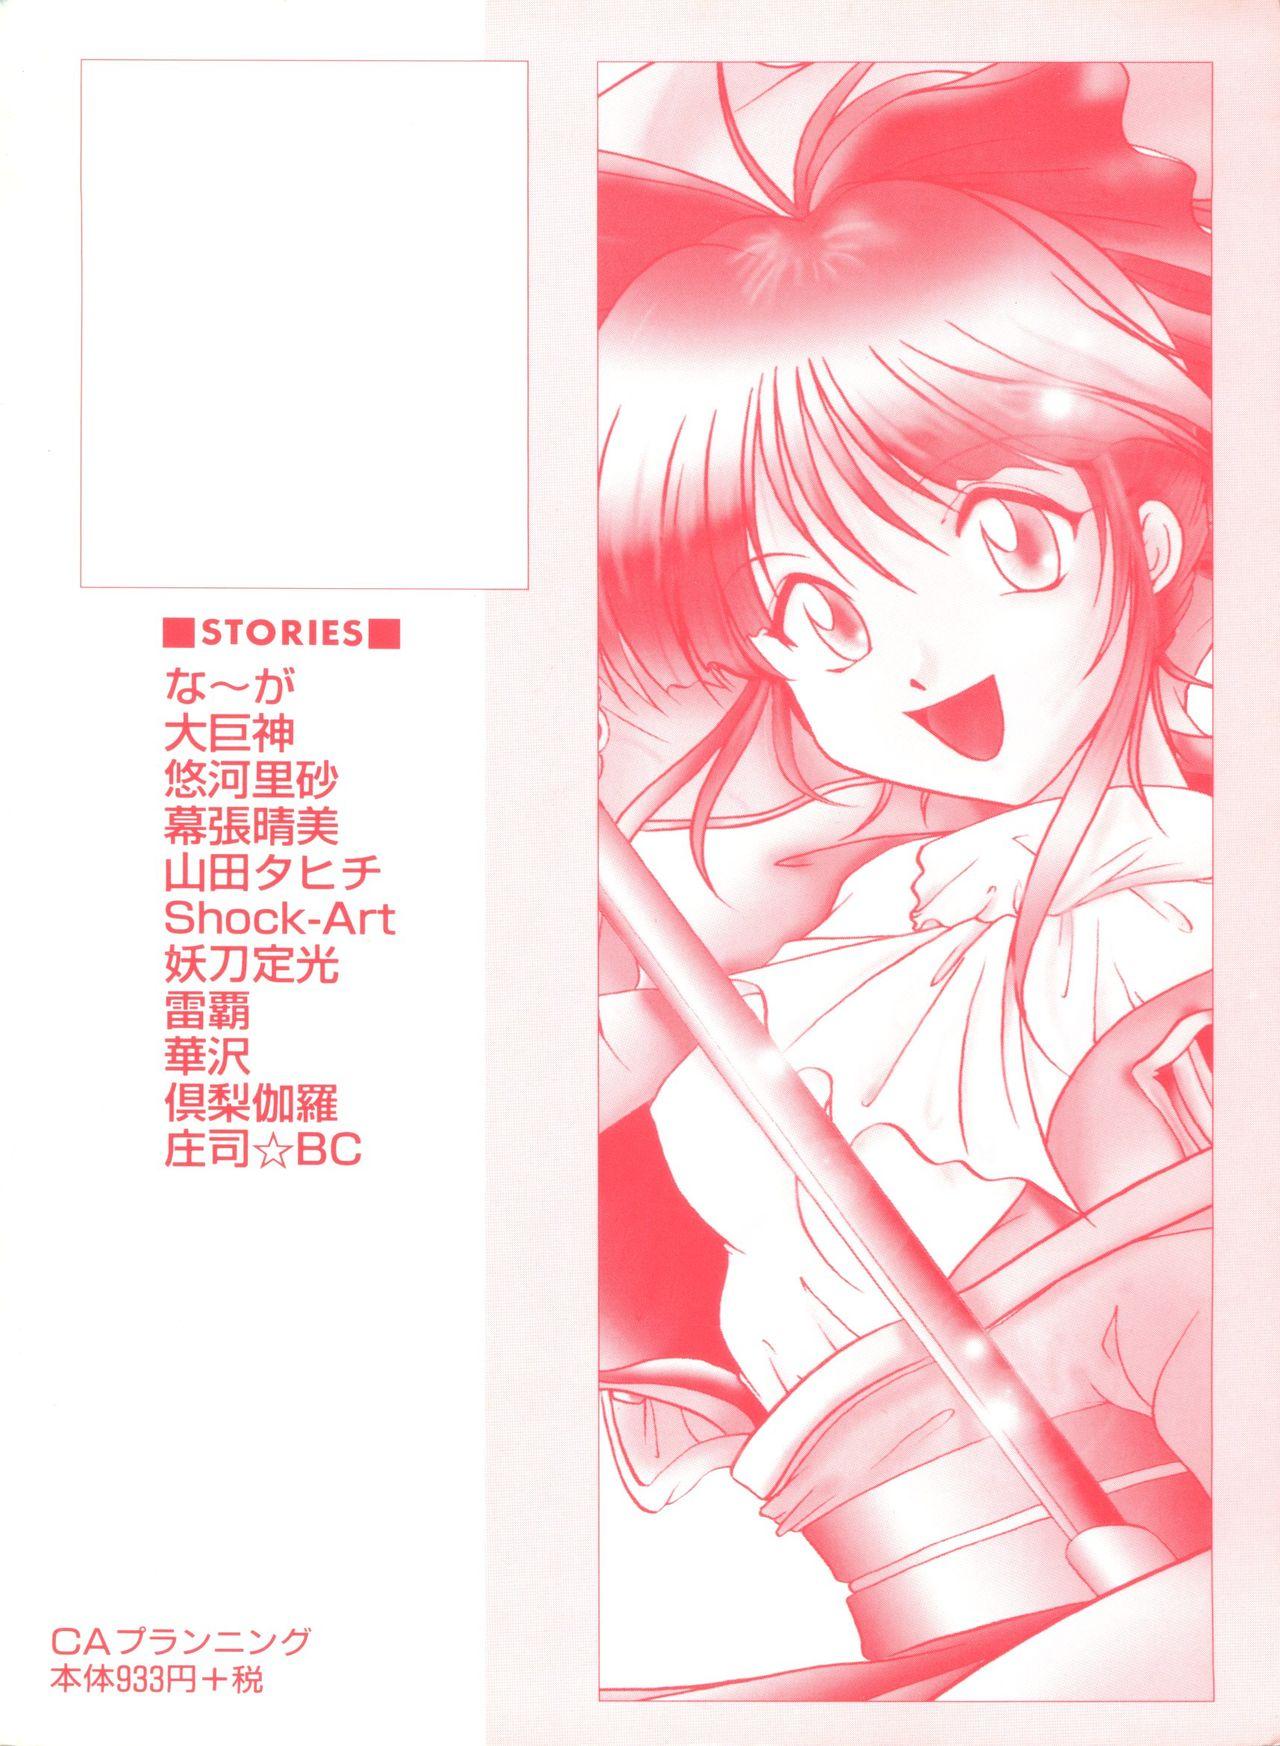 Stepfather Girl's Parade Scene 4 - Sakura taisen Martian successor nadesico Slayers Yu yu hakusho Threeway - Page 180